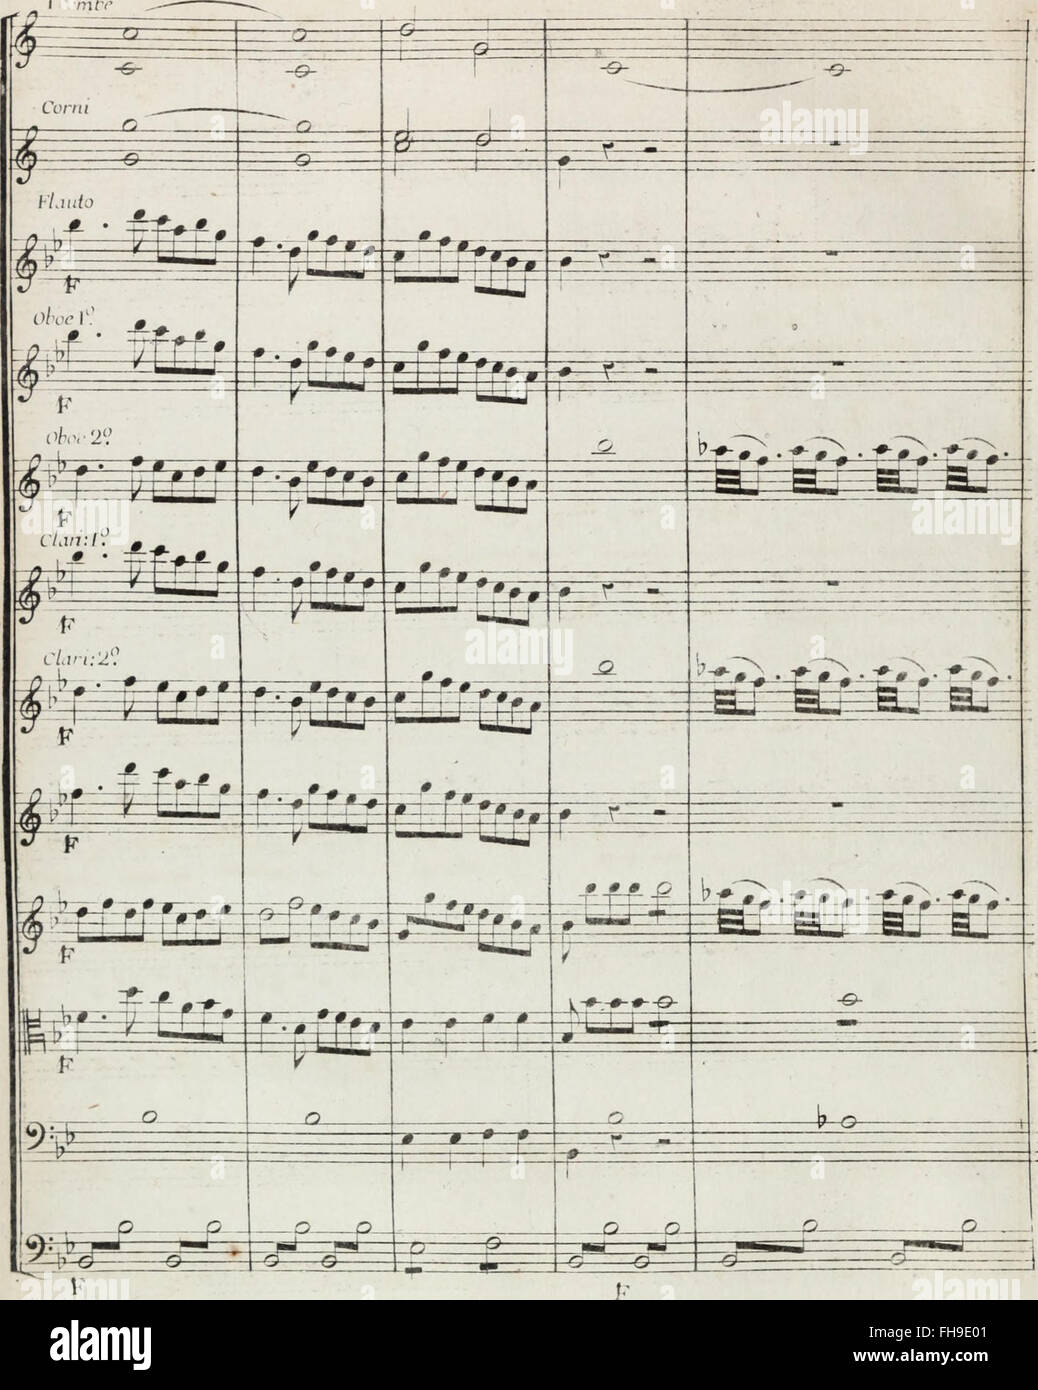 Gli Orazi e j Curiazi - opera seria (1810) Stock Photo